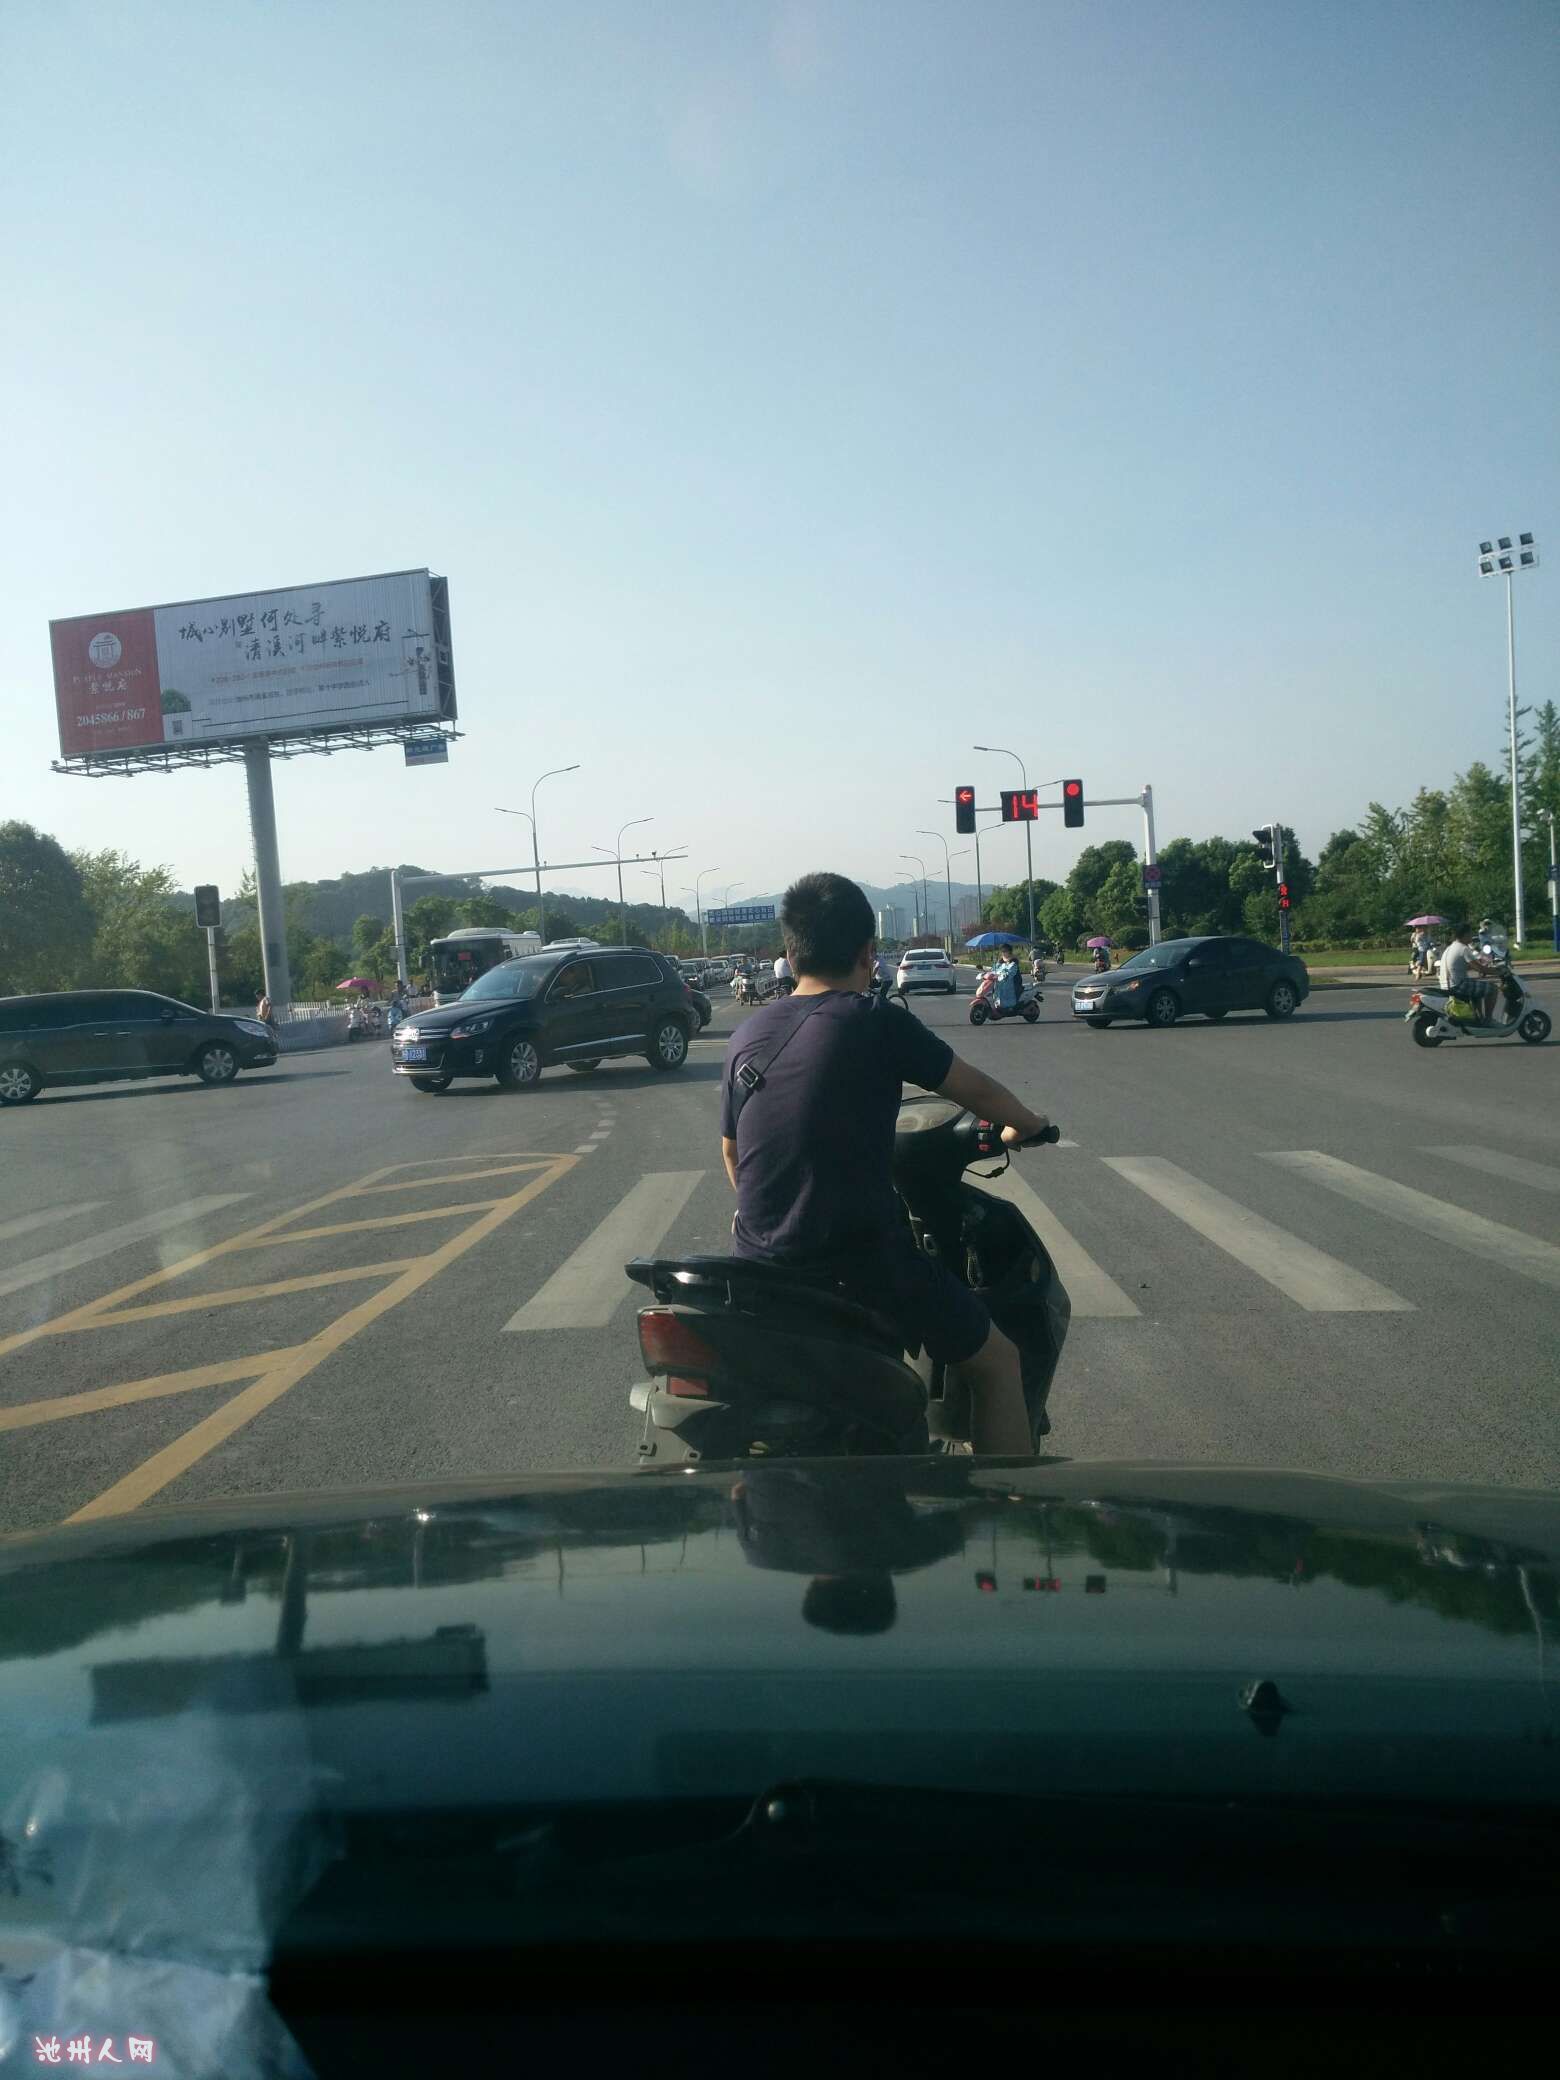 早上开车上班左拐弯绿灯一个小青年骑摩托车横穿并极速